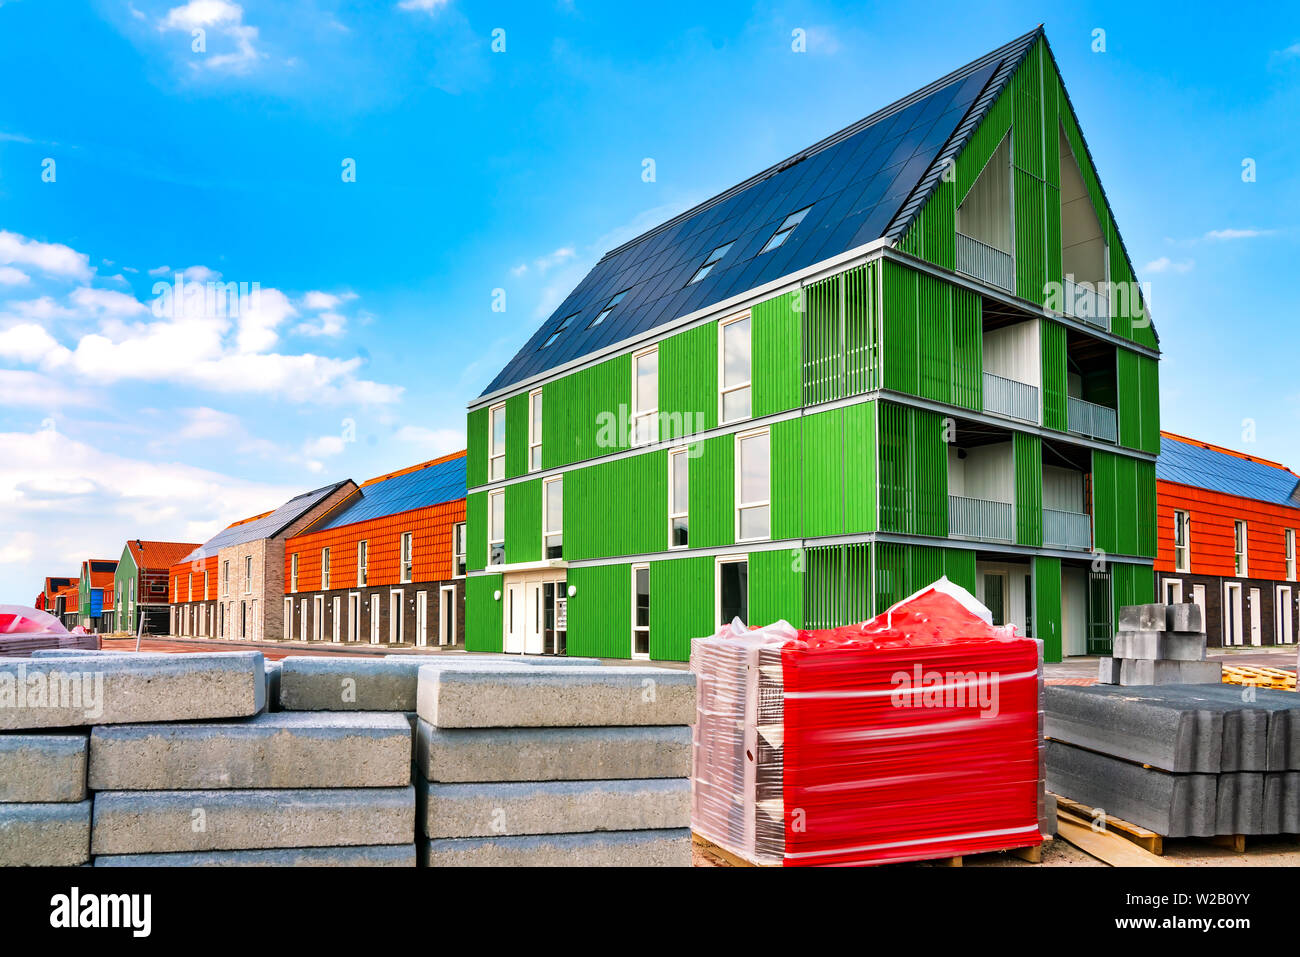 Vue sur site de construction. Nouvelle construction avec panneaux solaires de toit Banque D'Images